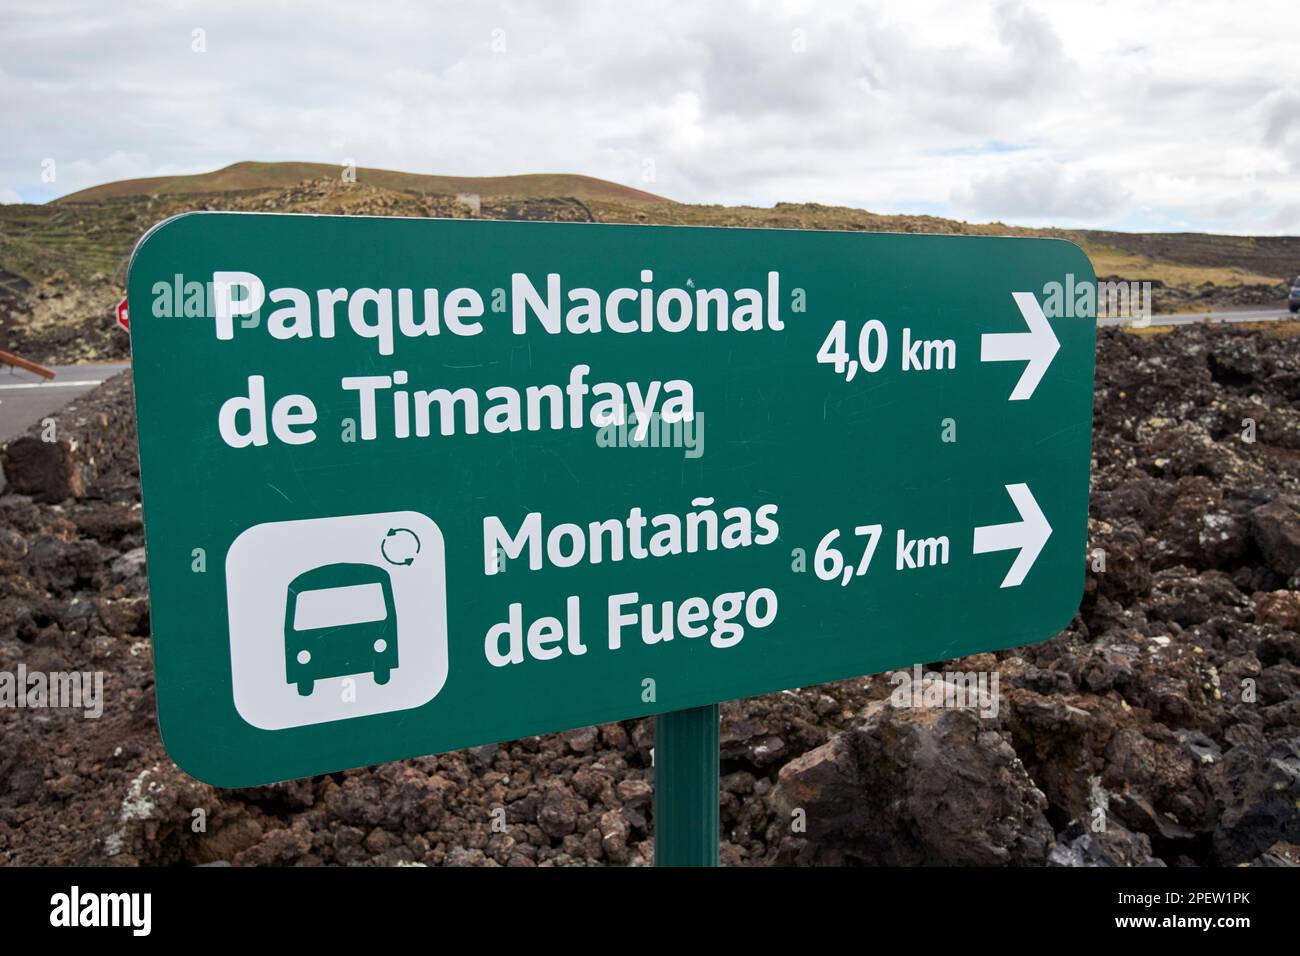 signpost for parque nacional de timanfaya and montanas del fuego bus tour Lanzarote, Canary Islands, Spain Stock Photo